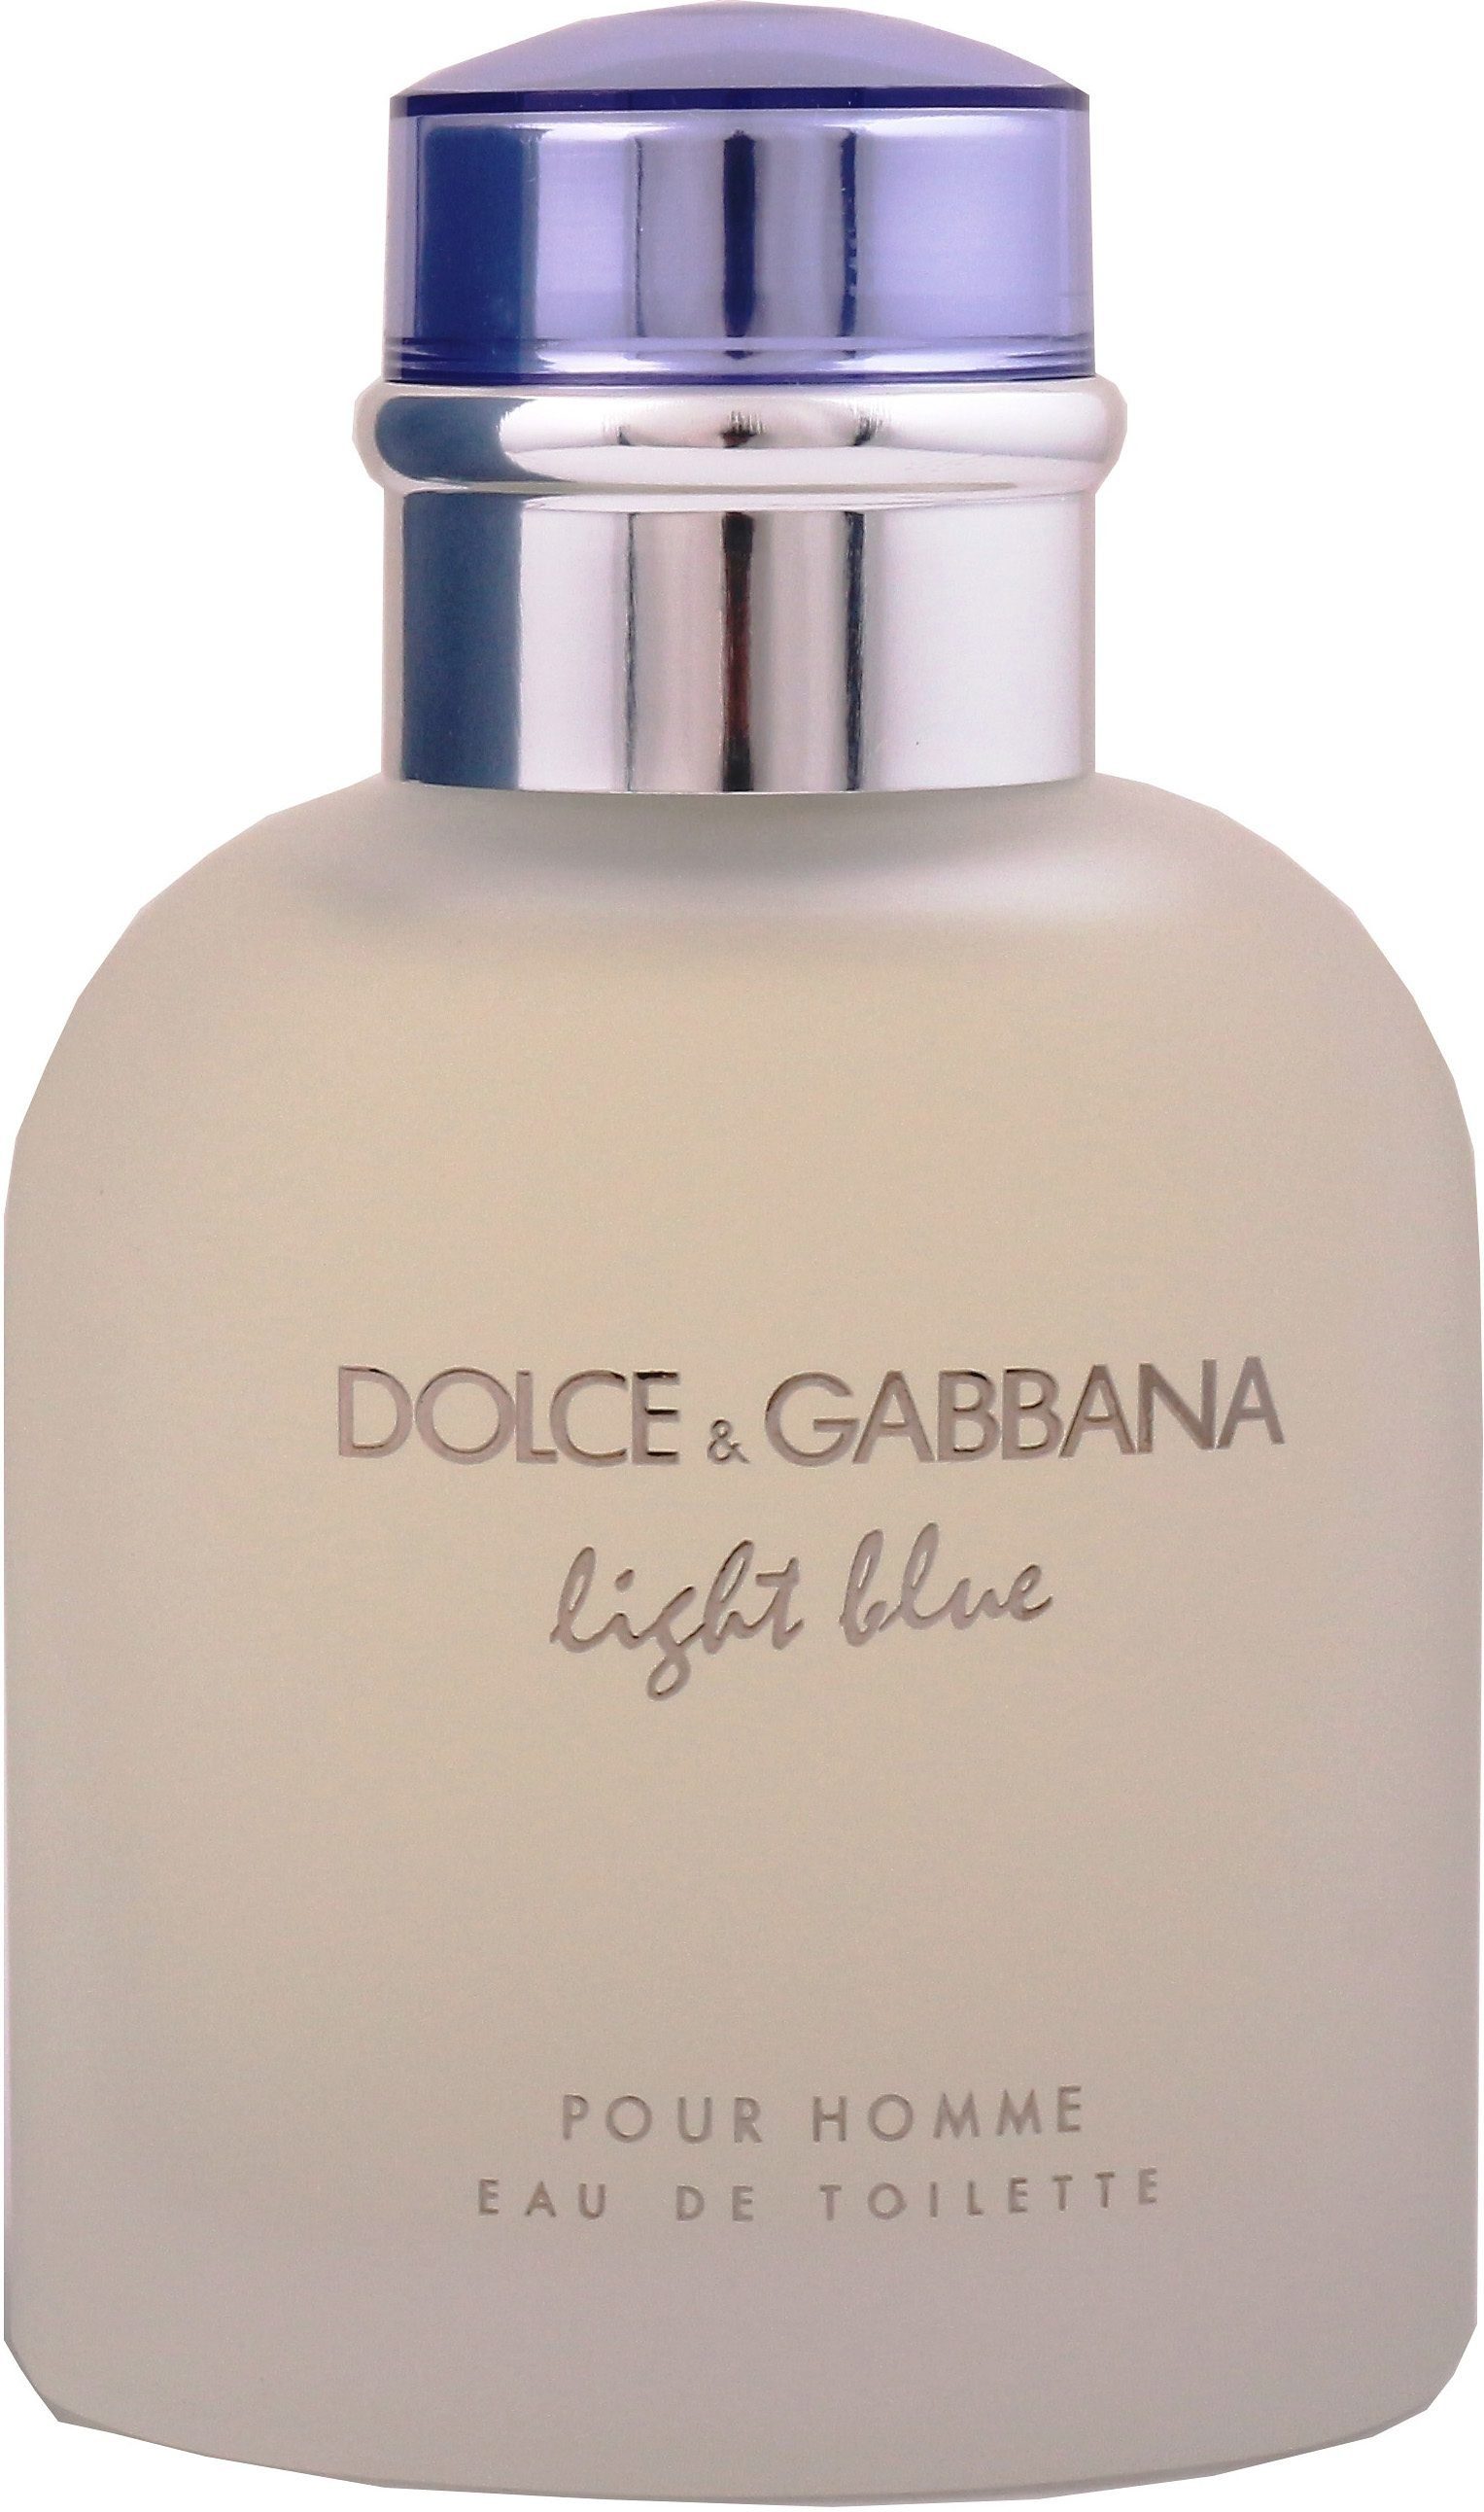 Blue Pour EdT GABBANA & him Homme, Eau Light de for DOLCE Parfum, Toilette Männer, für